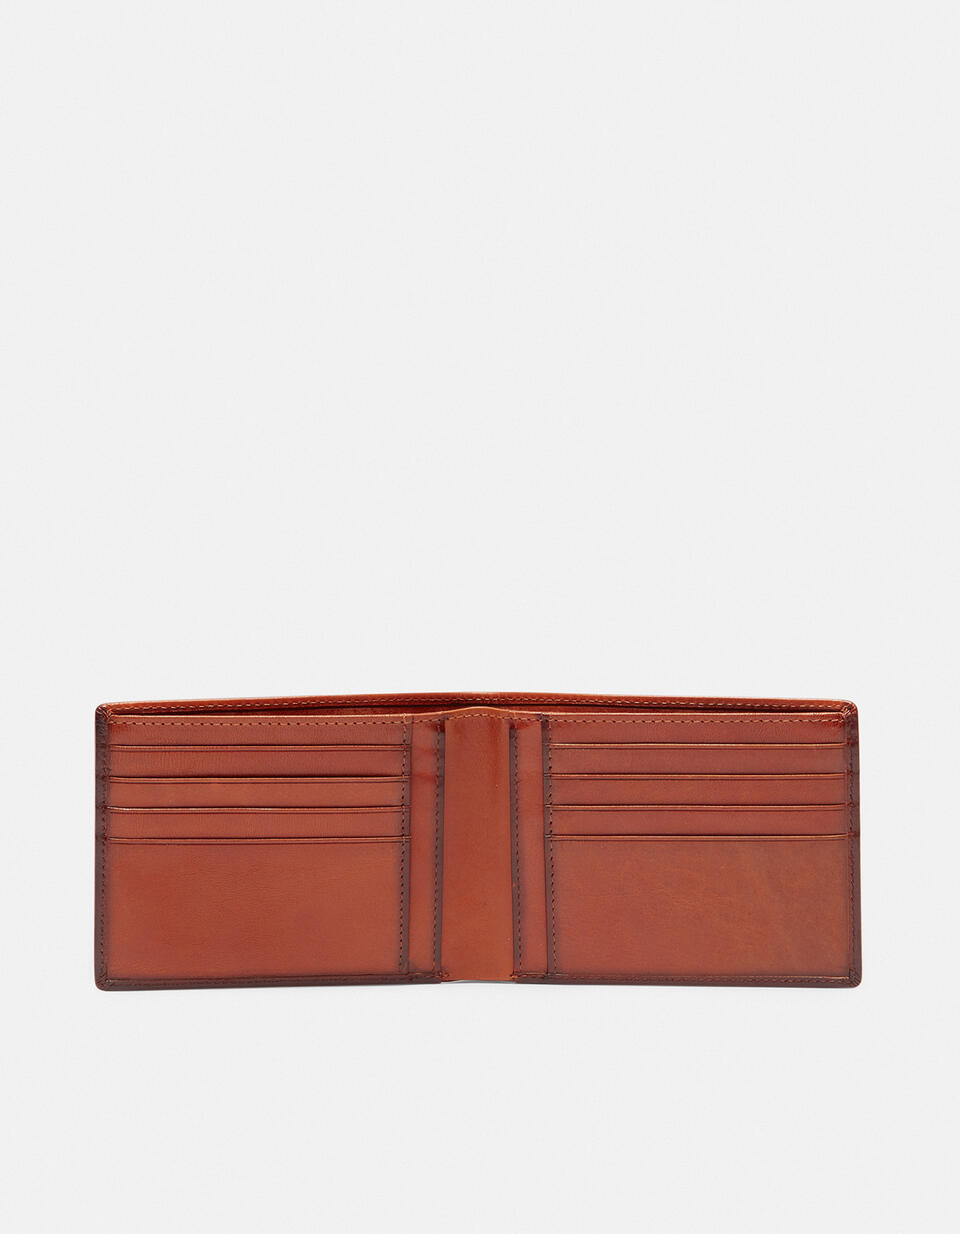 Bifold wallet Orange  - Women's Wallets - Men's Wallets - Wallets - Cuoieria Fiorentina